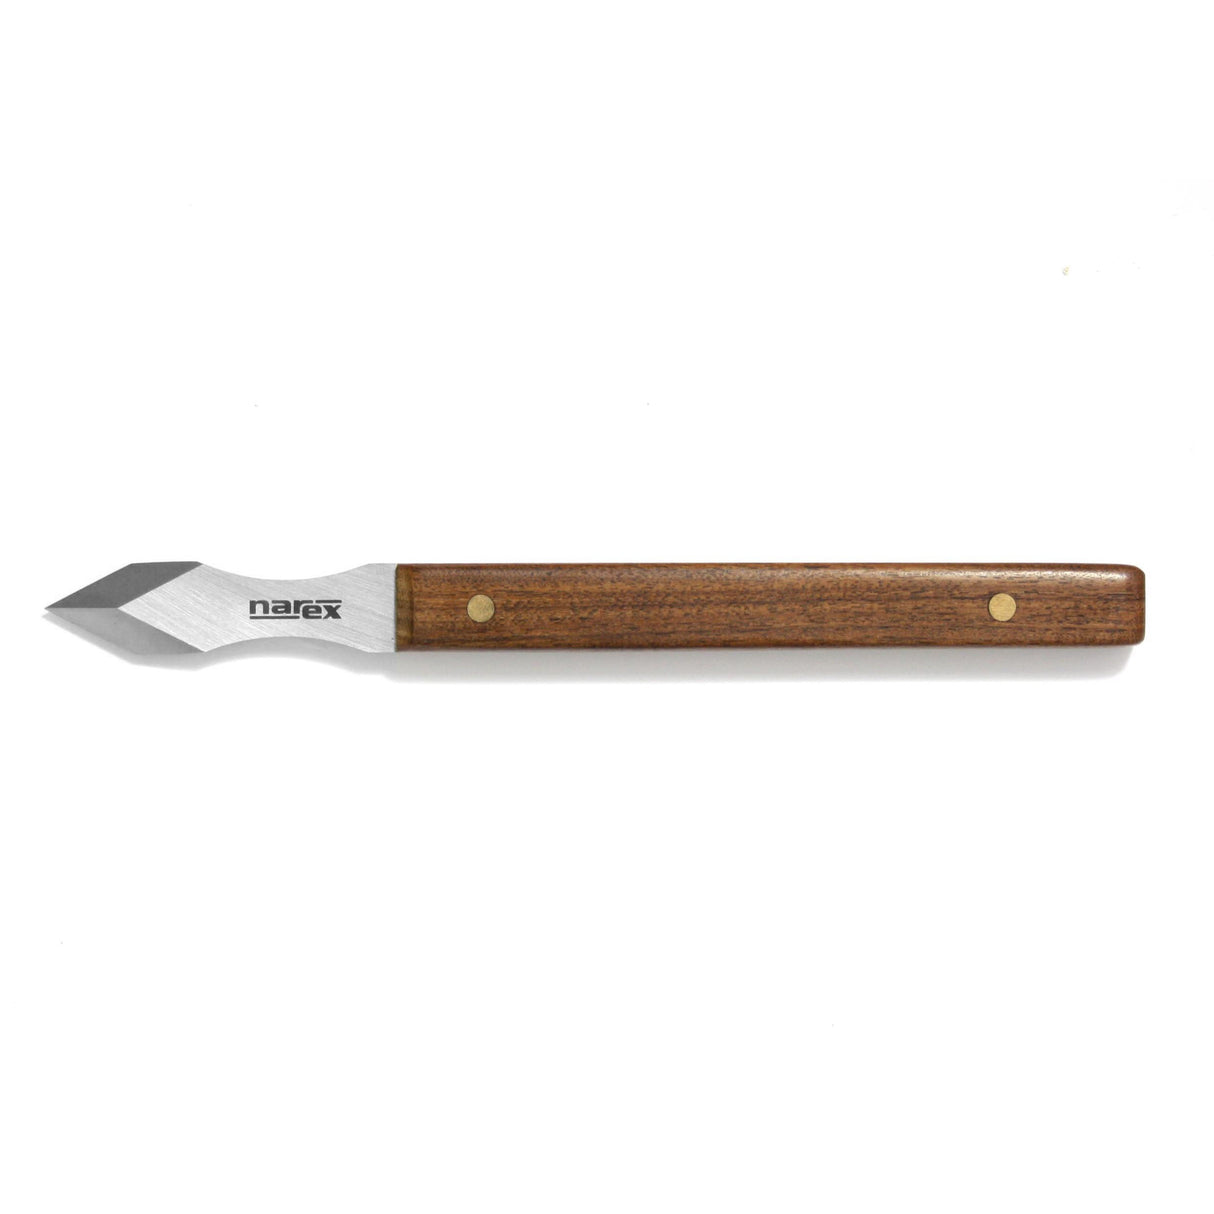 Narex Marking Knife